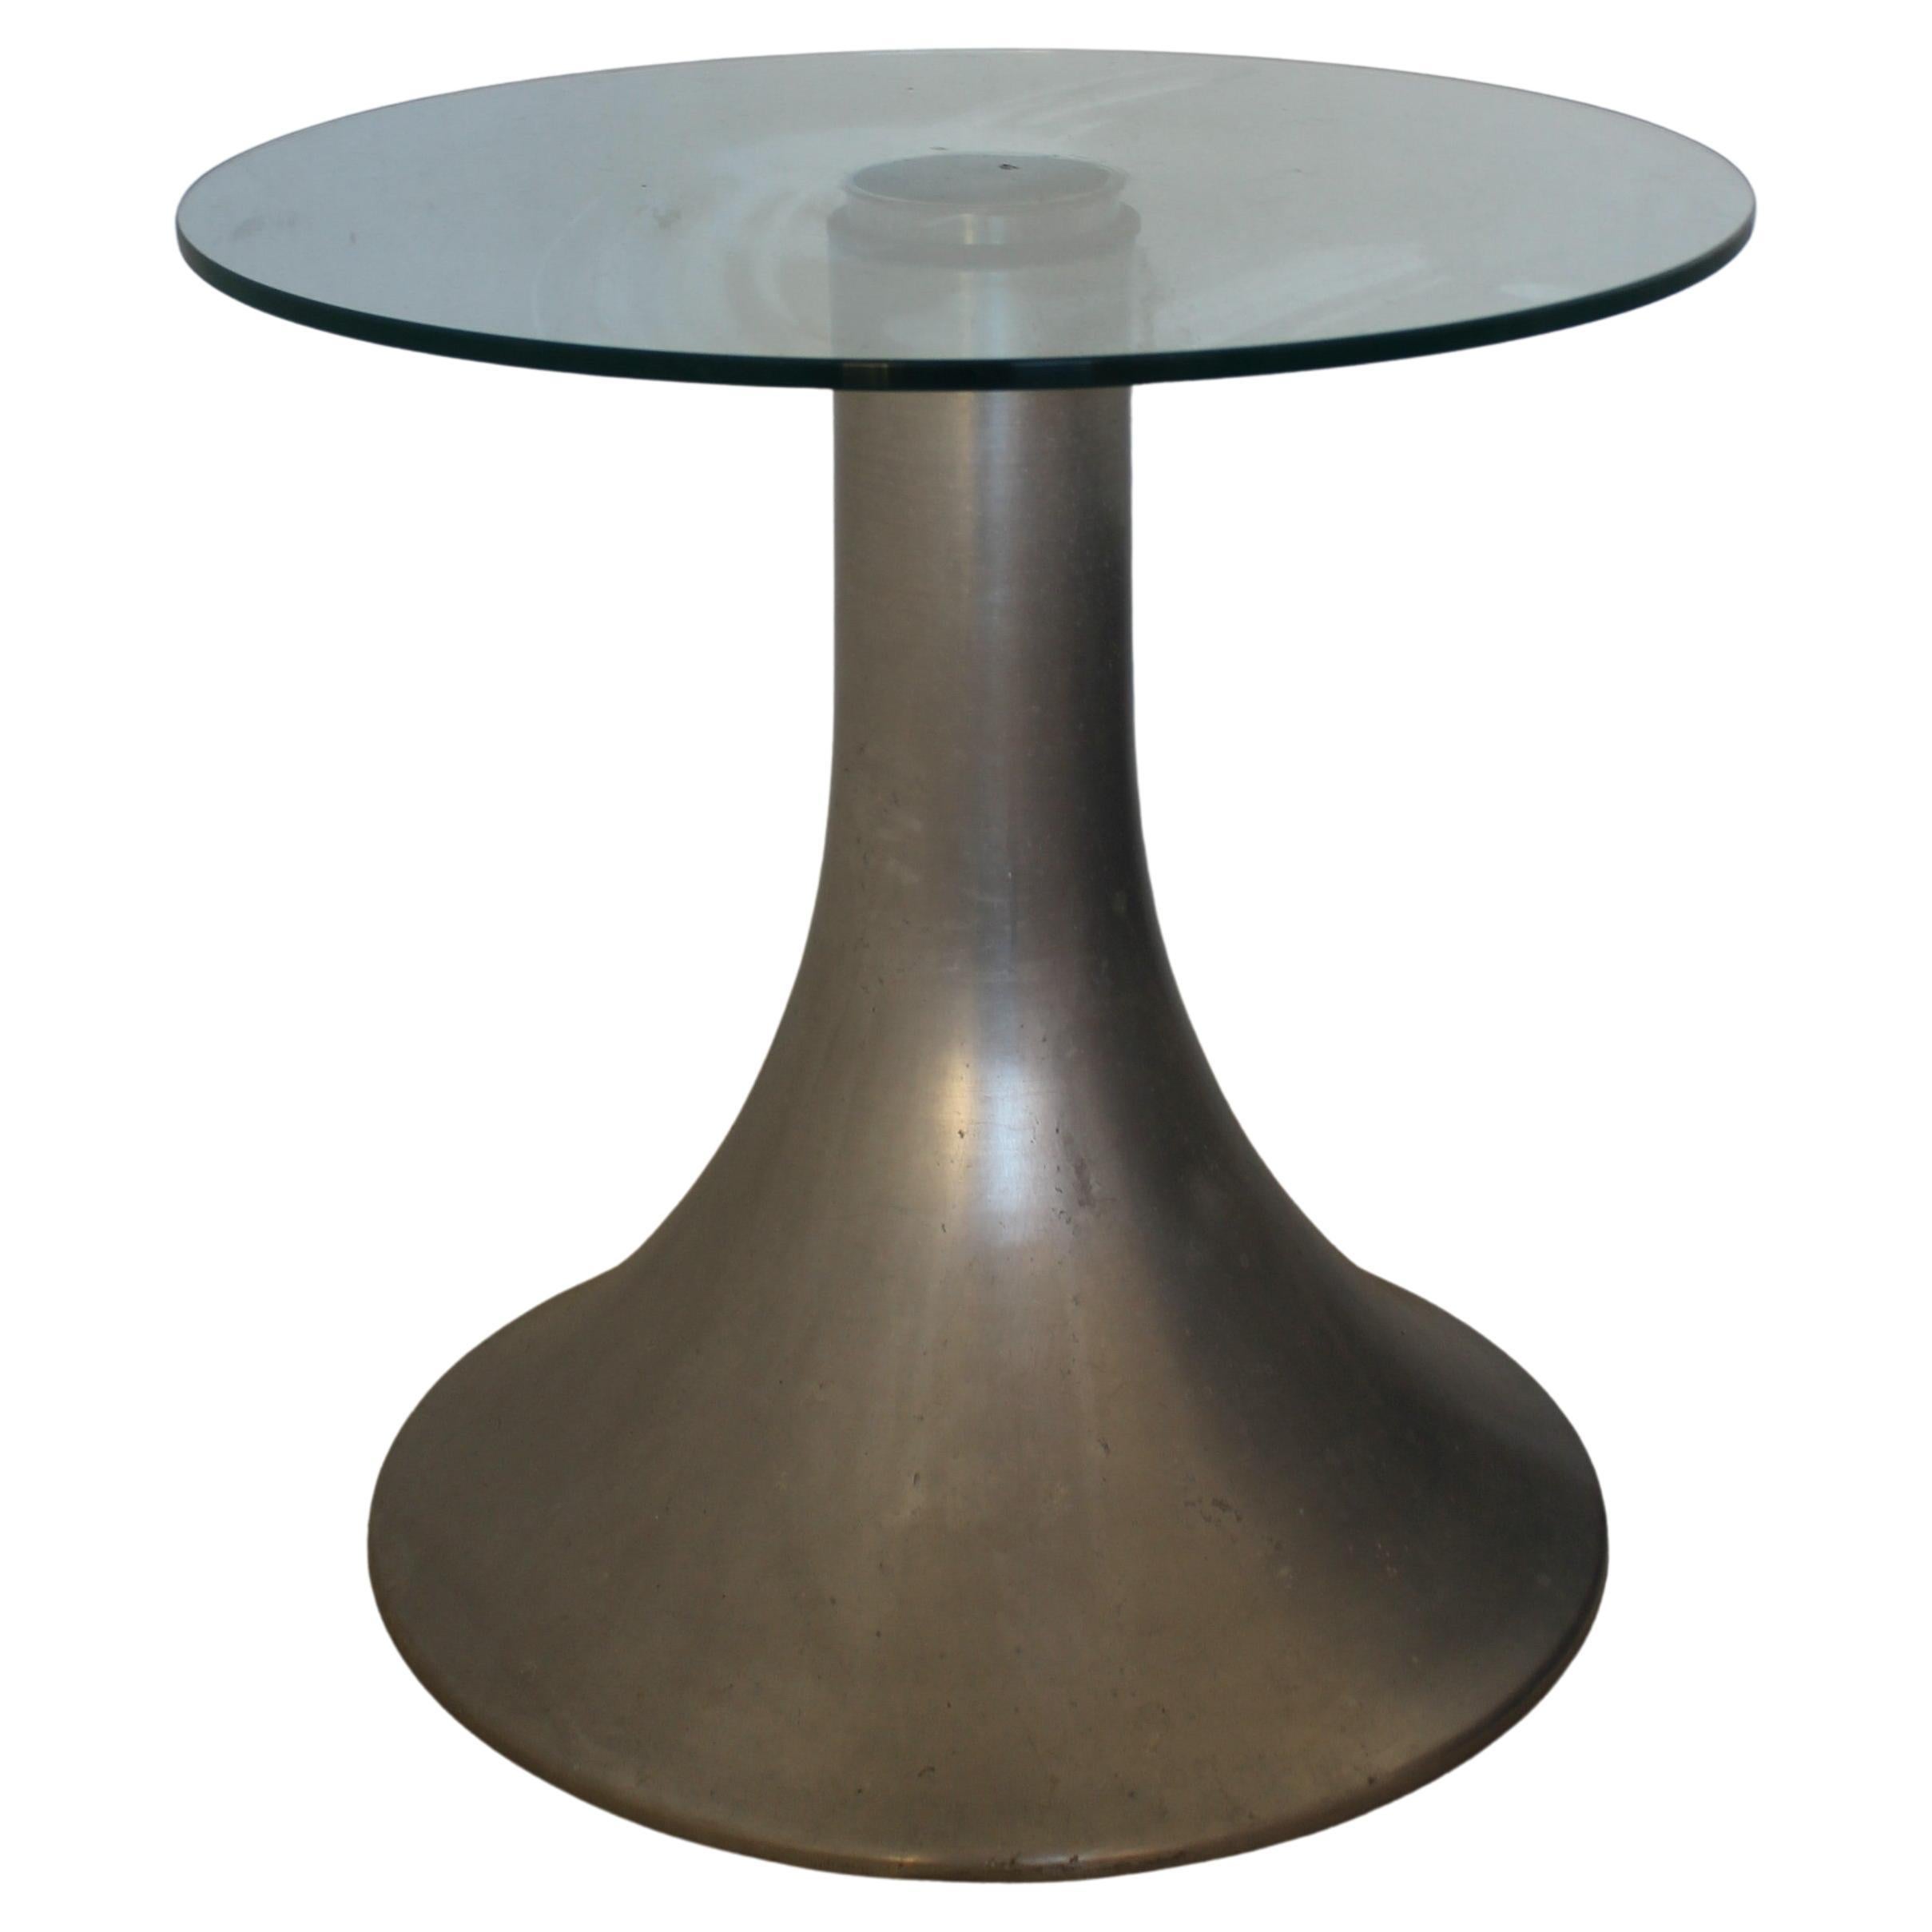 Petite table d'appoint en aluminium et verre The Moderns, Italie années 70

Cette table basse avec base tronconique en aluminium et plateau en verre est un exemple typique du design italien des années 1970.